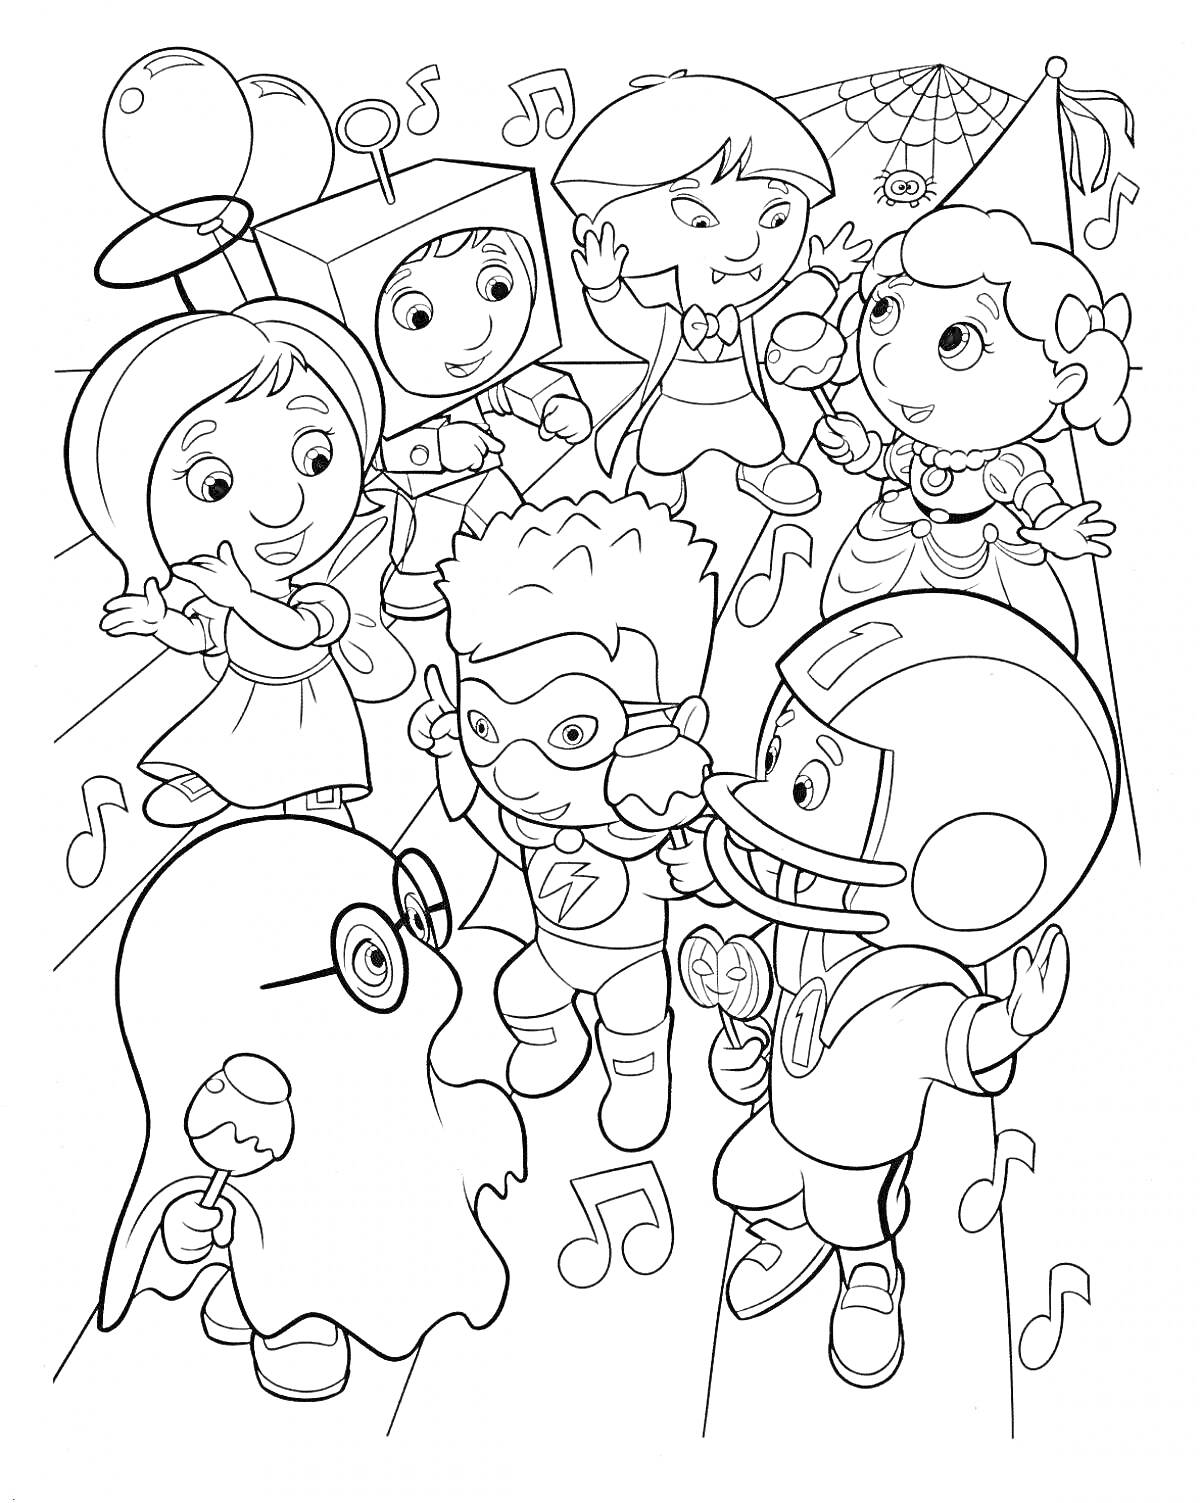 Детская маскарадная вечеринка на Хэллоуин с персонажами в костюмах привидения, робота, супергероя, феи, клоуна и футболиста, на фоне нот и паутины.